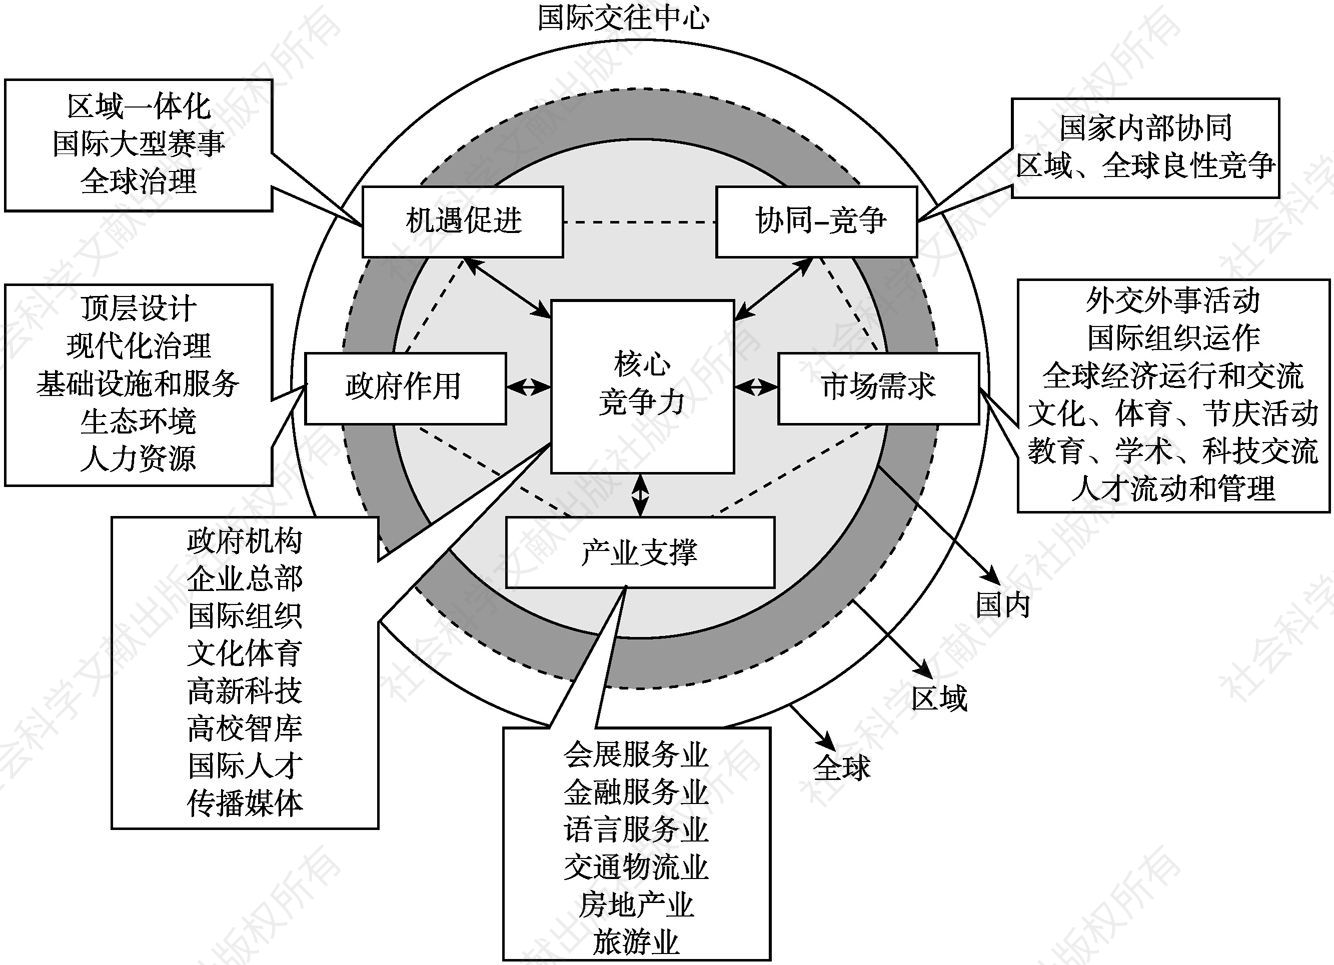 图4-2 国际交往中心“钻石同心圆”理论模型